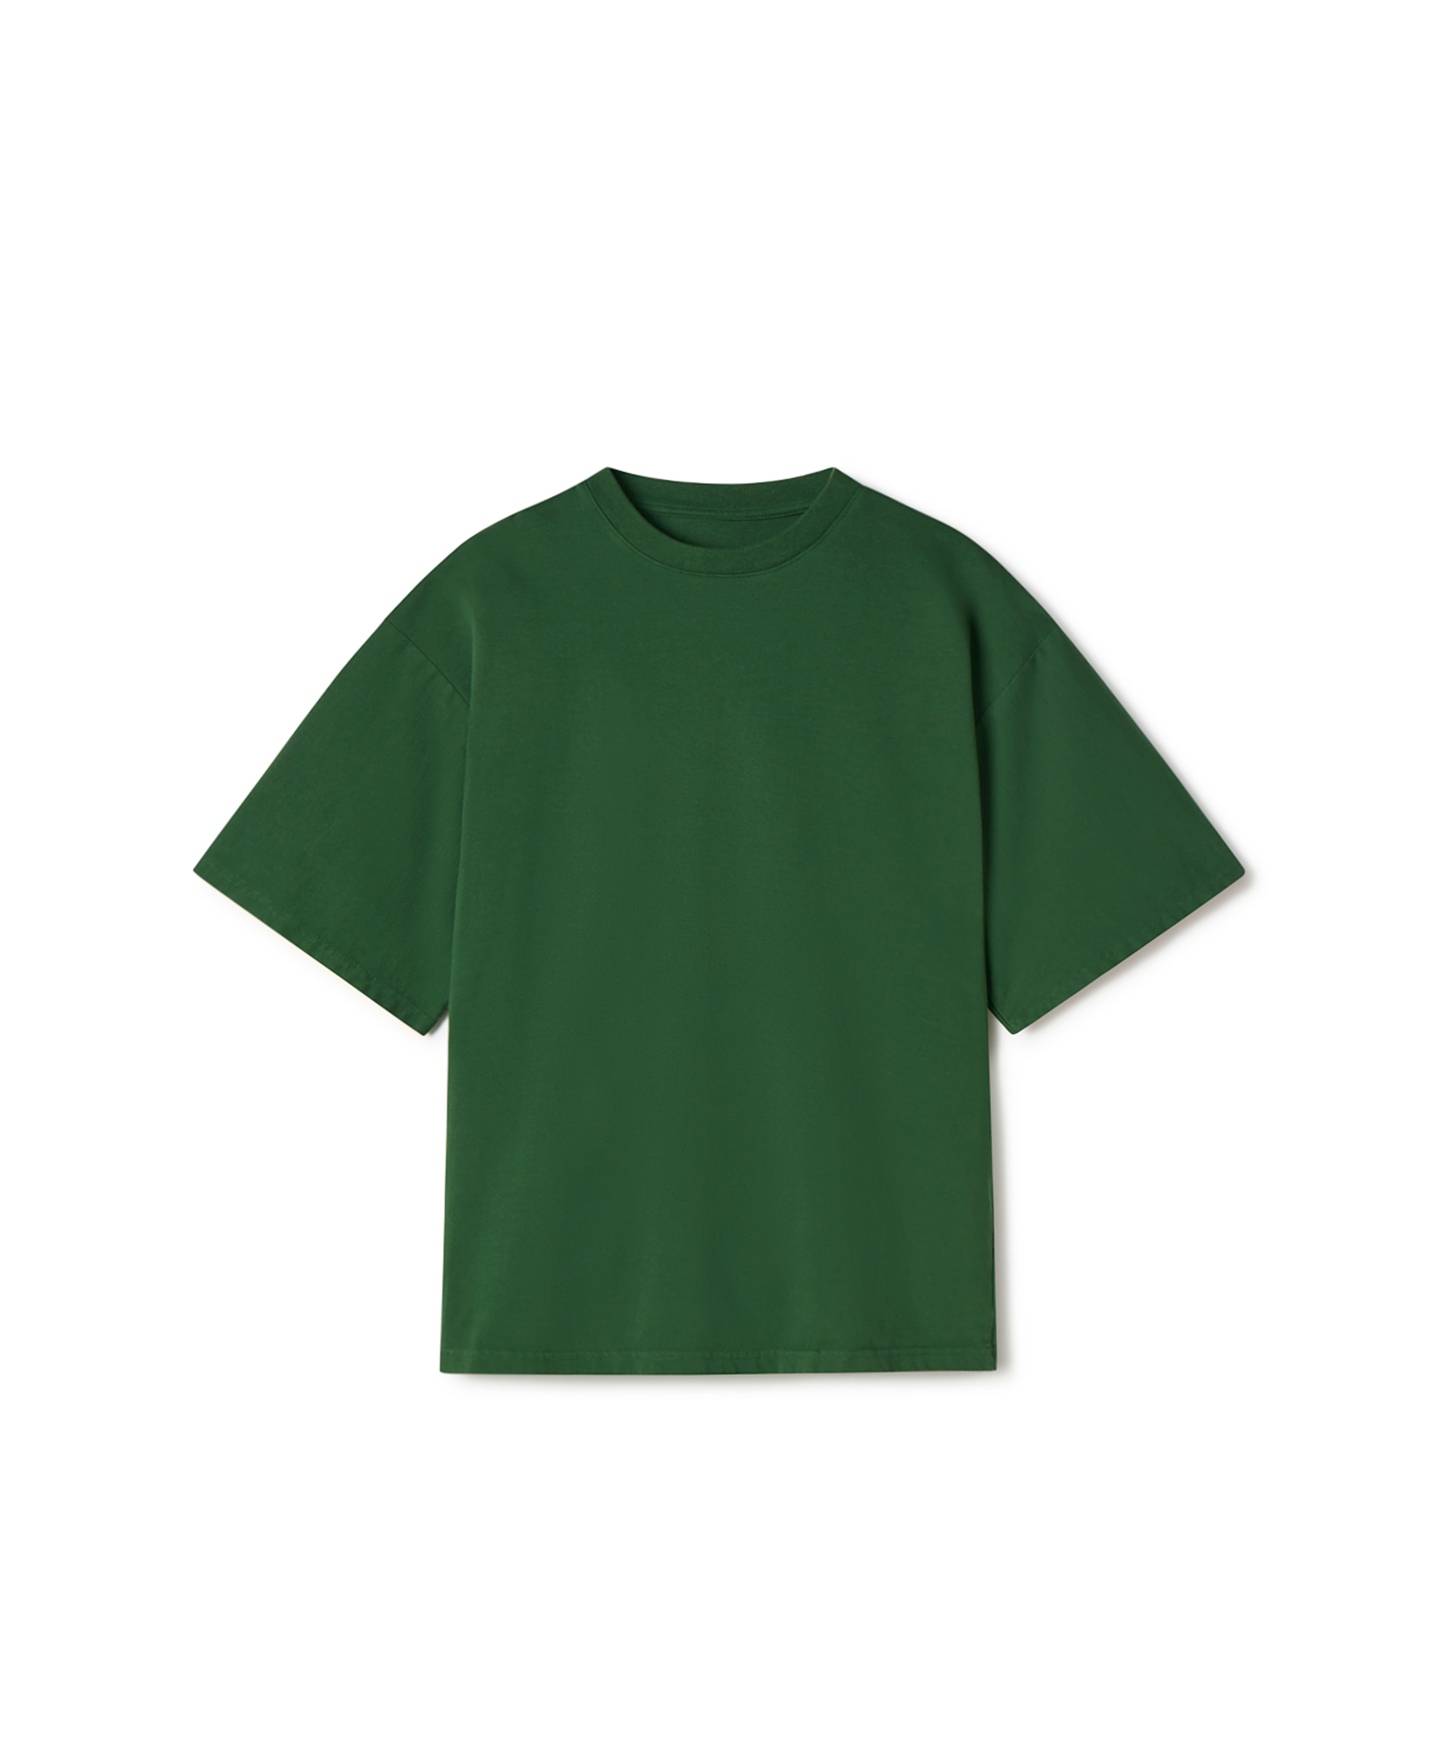 300 GSM 'Pine Green' T-Shirt